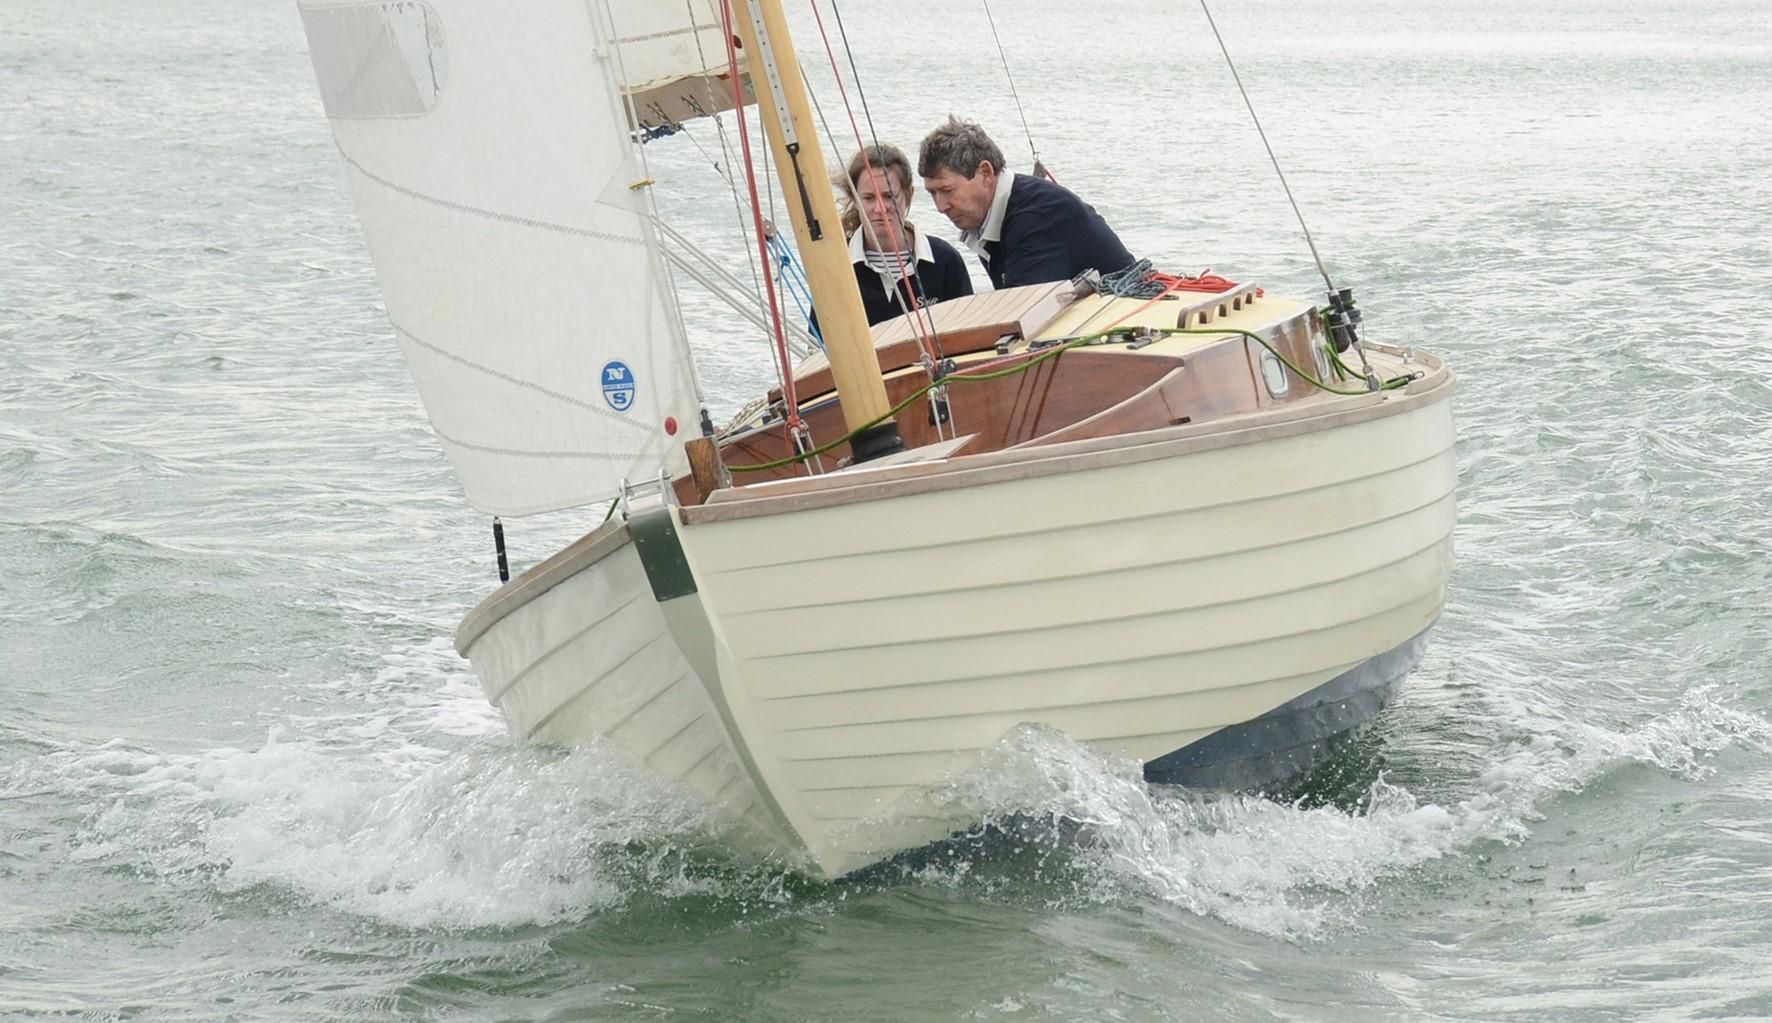 folkboat sailboat for sale